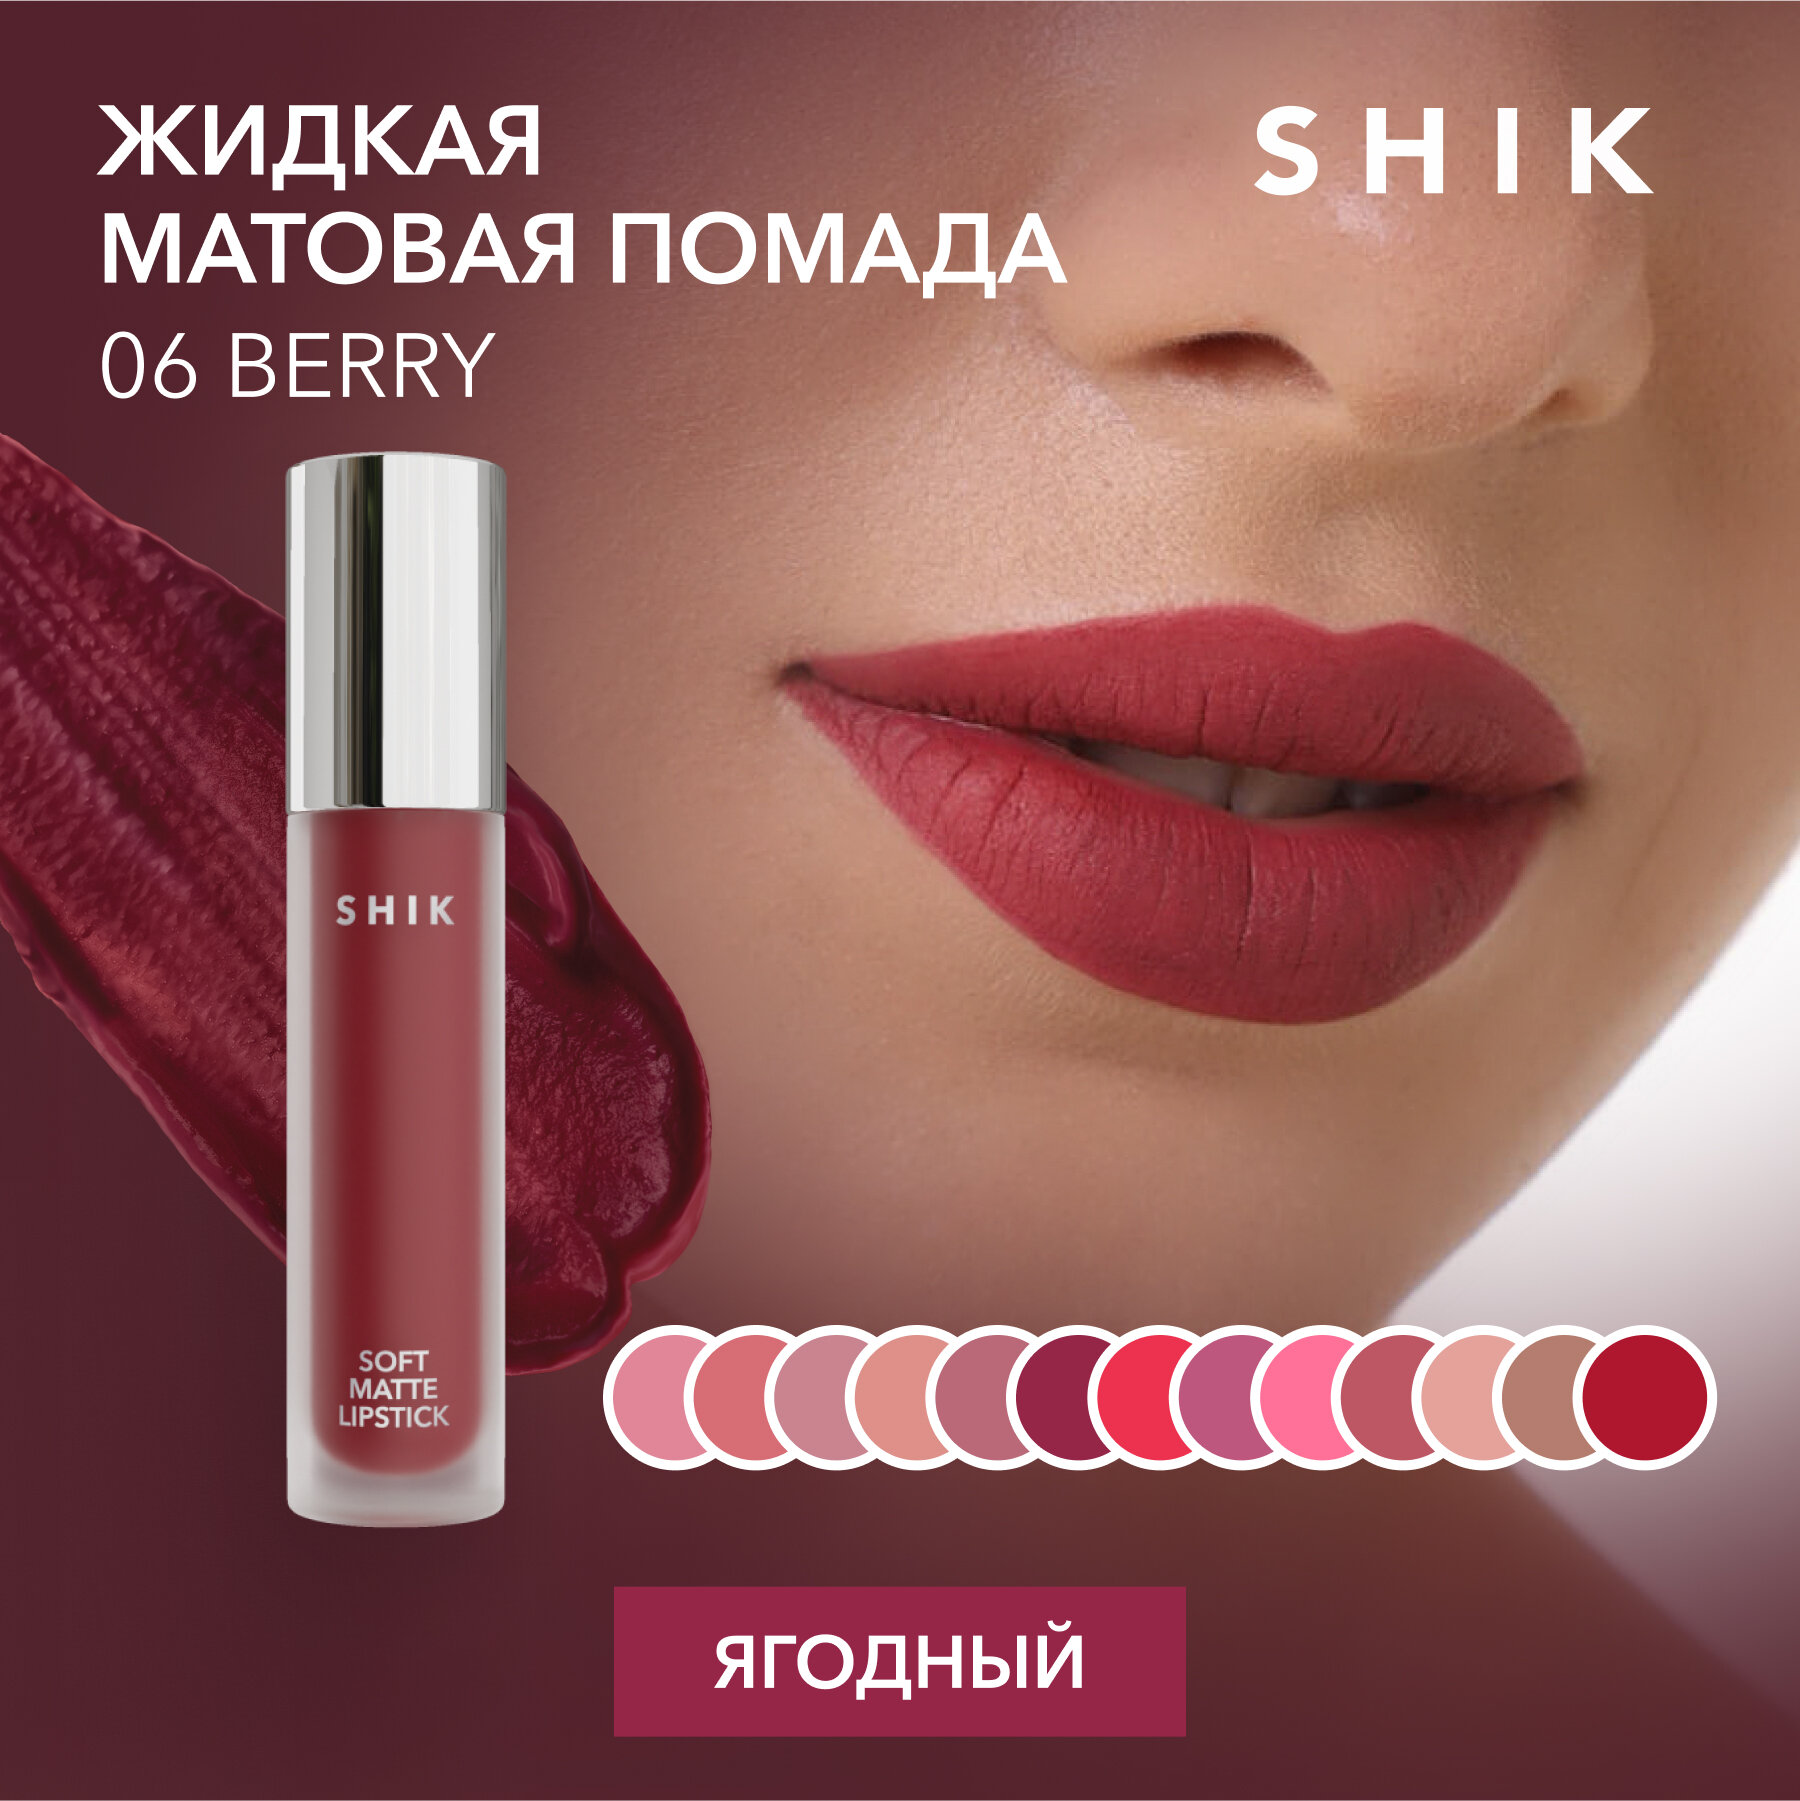 SHIK Помада бордовая темная для губ жидкая матовая кремовая оттенок 06 Berry SOFT MATTE LIPSTICK